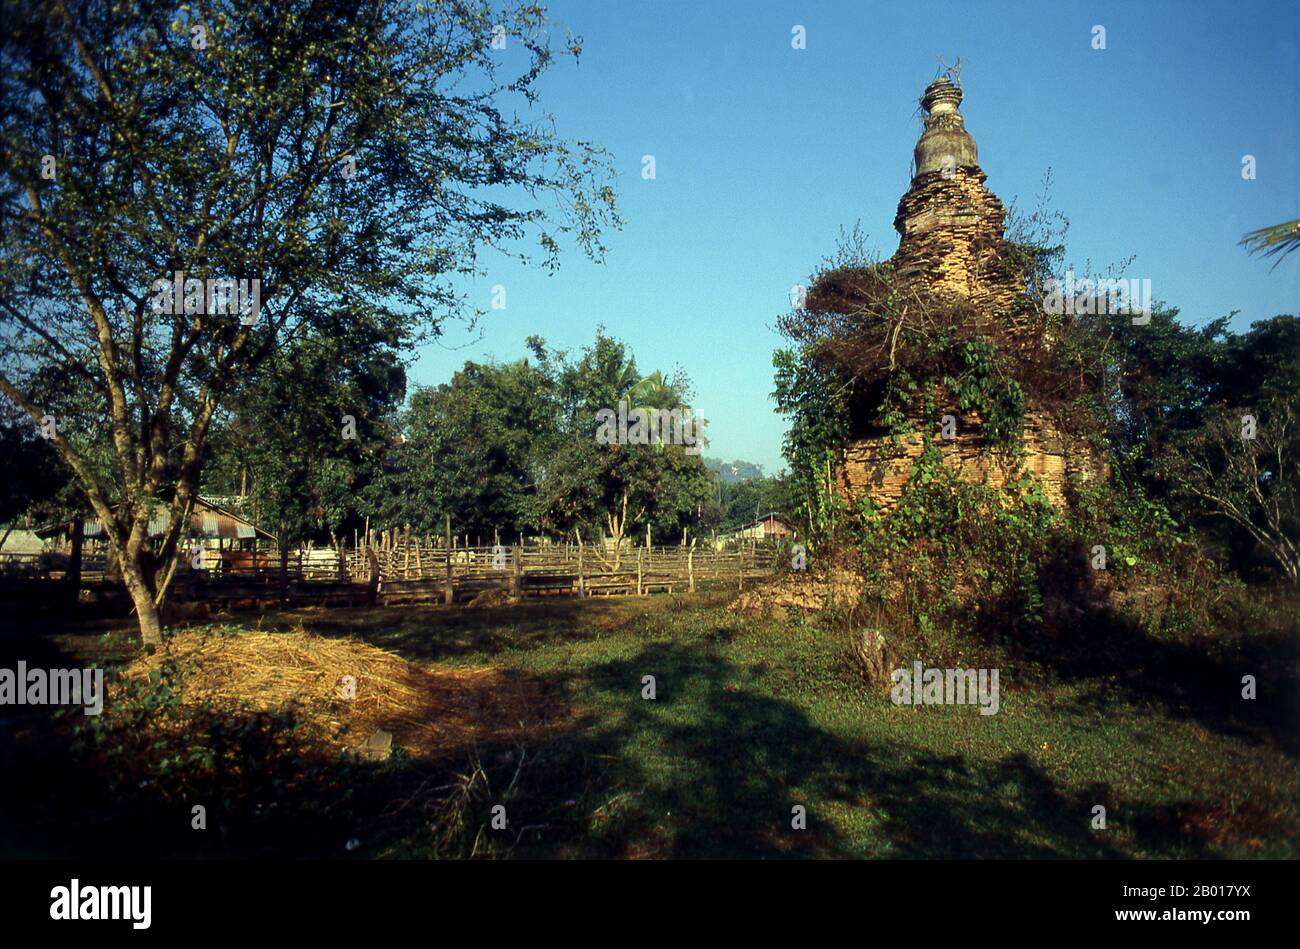 Thailandia: Chedi rovinato a Wat si Muang ma, Chiang Saen, provincia di Chiang Rai, Thailandia settentrionale. La storica città di Chiang Saen, situata sulla riva occidentale del fiume Mekong di fronte al Laos, risale al 12th secolo. Fu una parte importante del regno Lanna di re Mangrai, che in origine era la sua prima capitale. Foto Stock